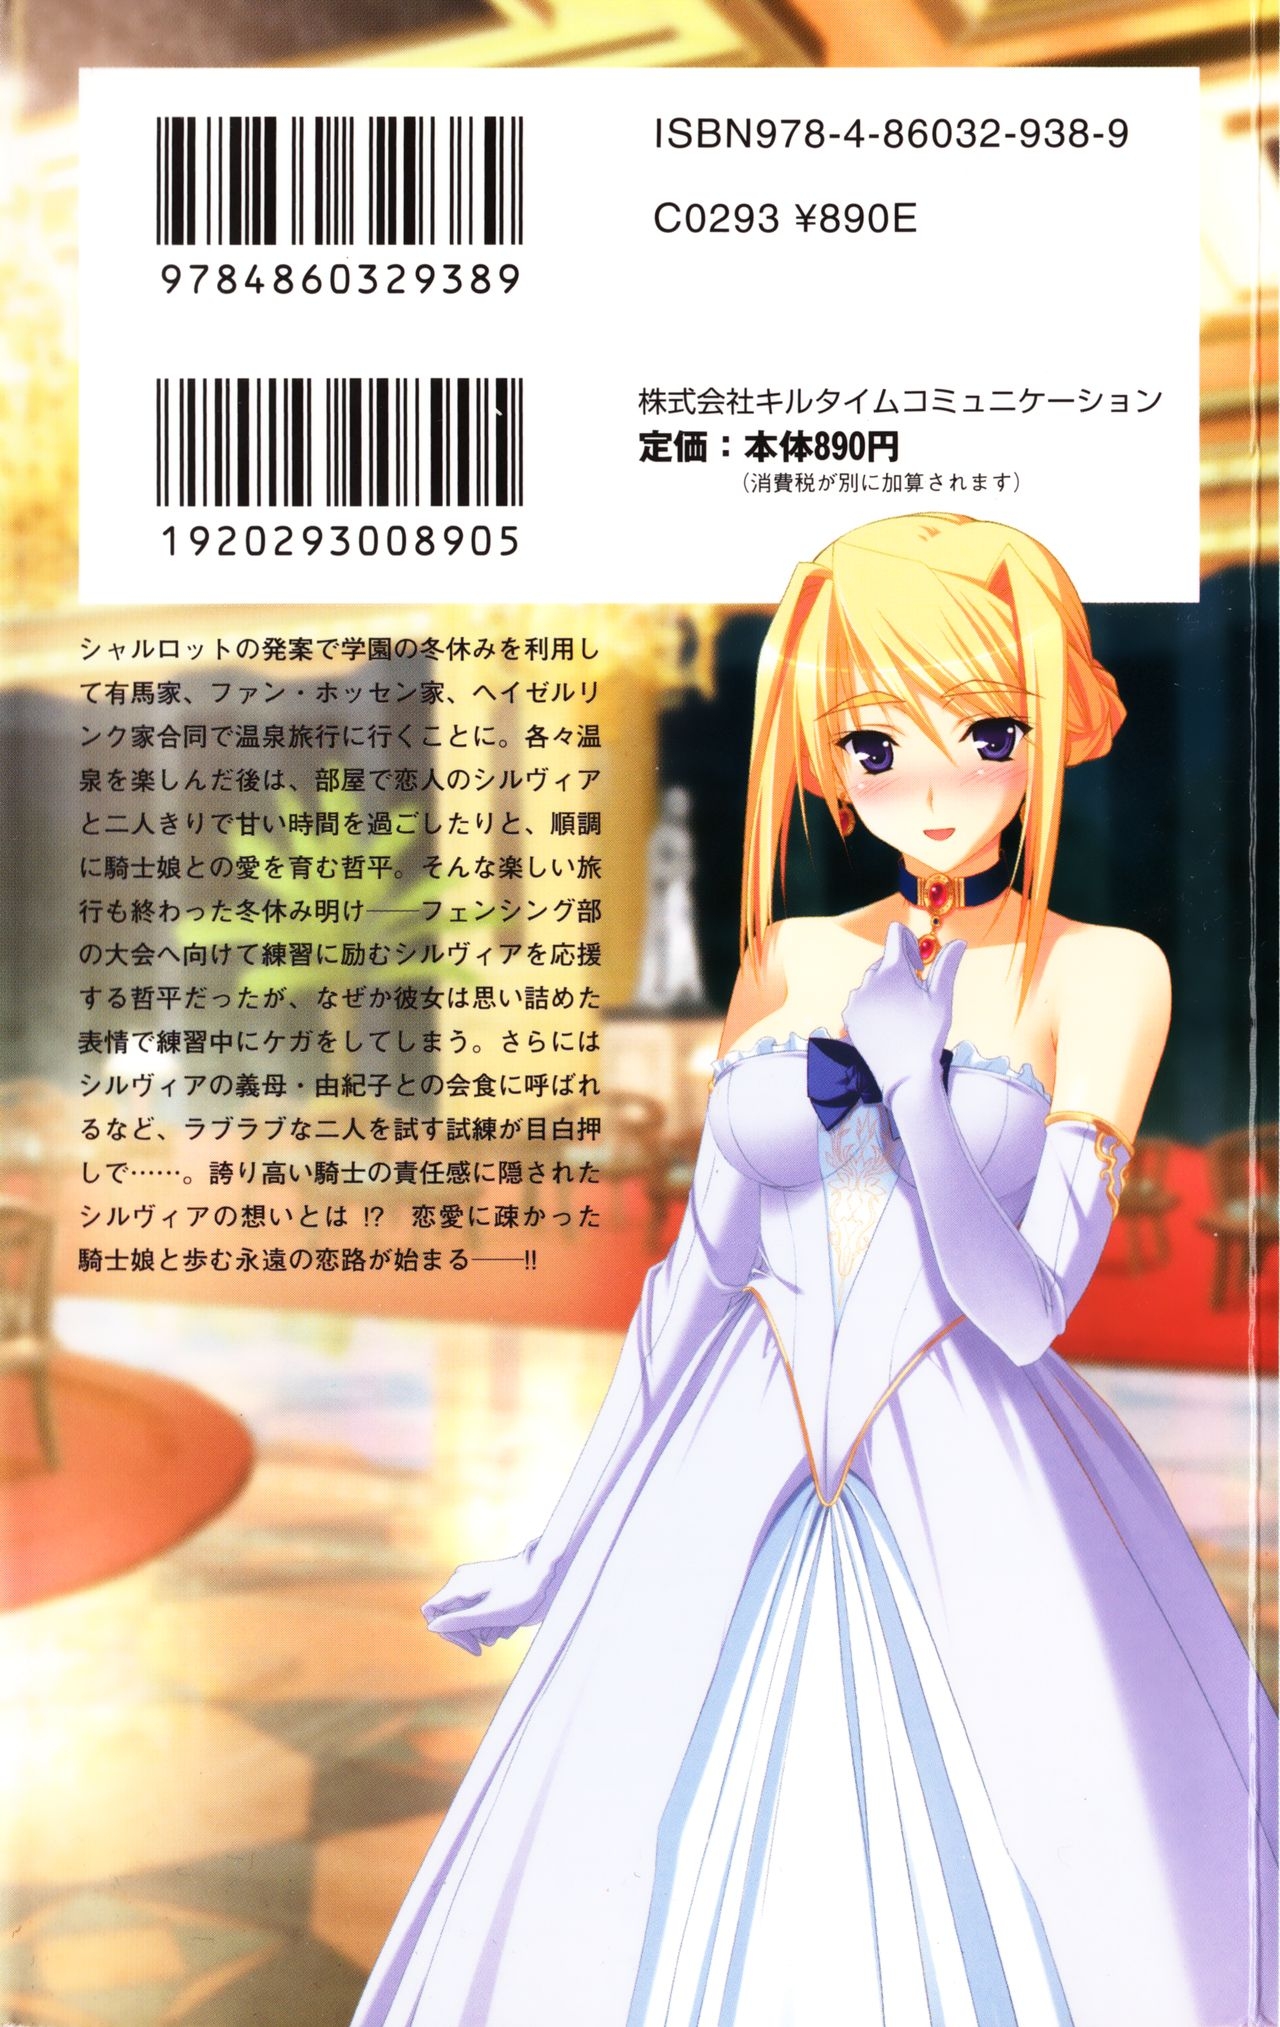 [Utsusemi × Yoshi Hyuma, Komori Kei] Princess Lover! Sylvia van Hossen no Koiji 2 (Original by Ricotta) 282